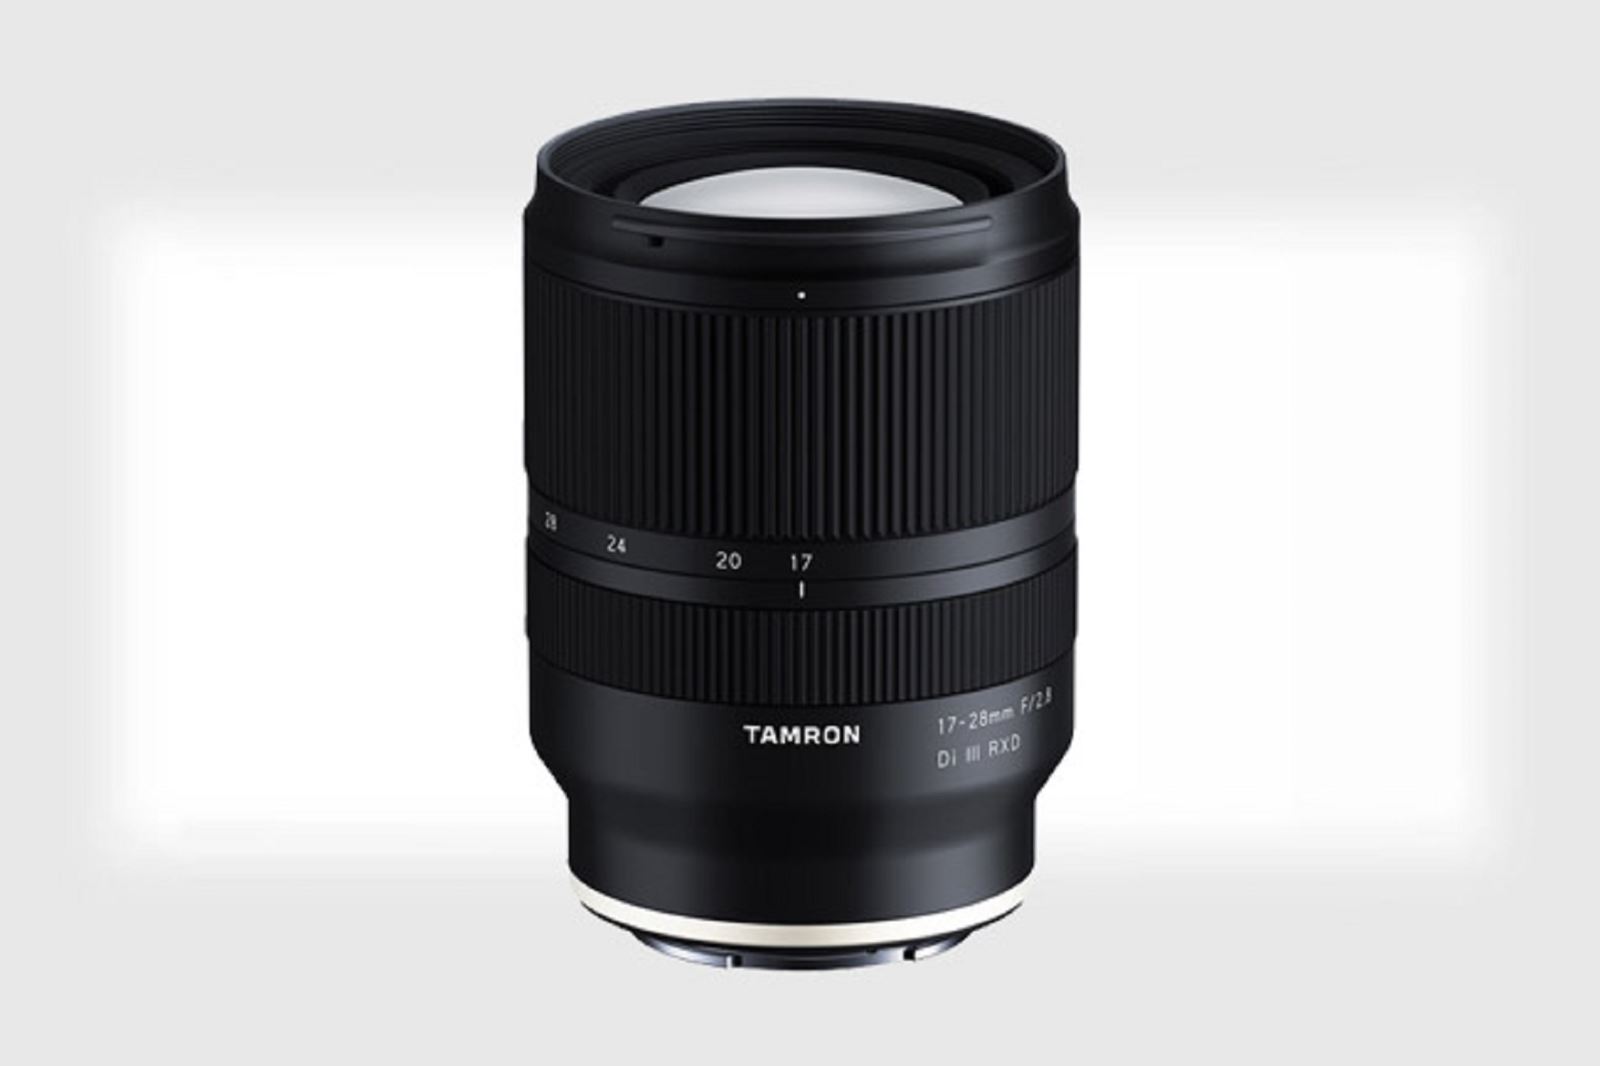 Tamron chính thức ra mắt ống kính 17-28mm F2.8 cho máy ảnh Sony FE